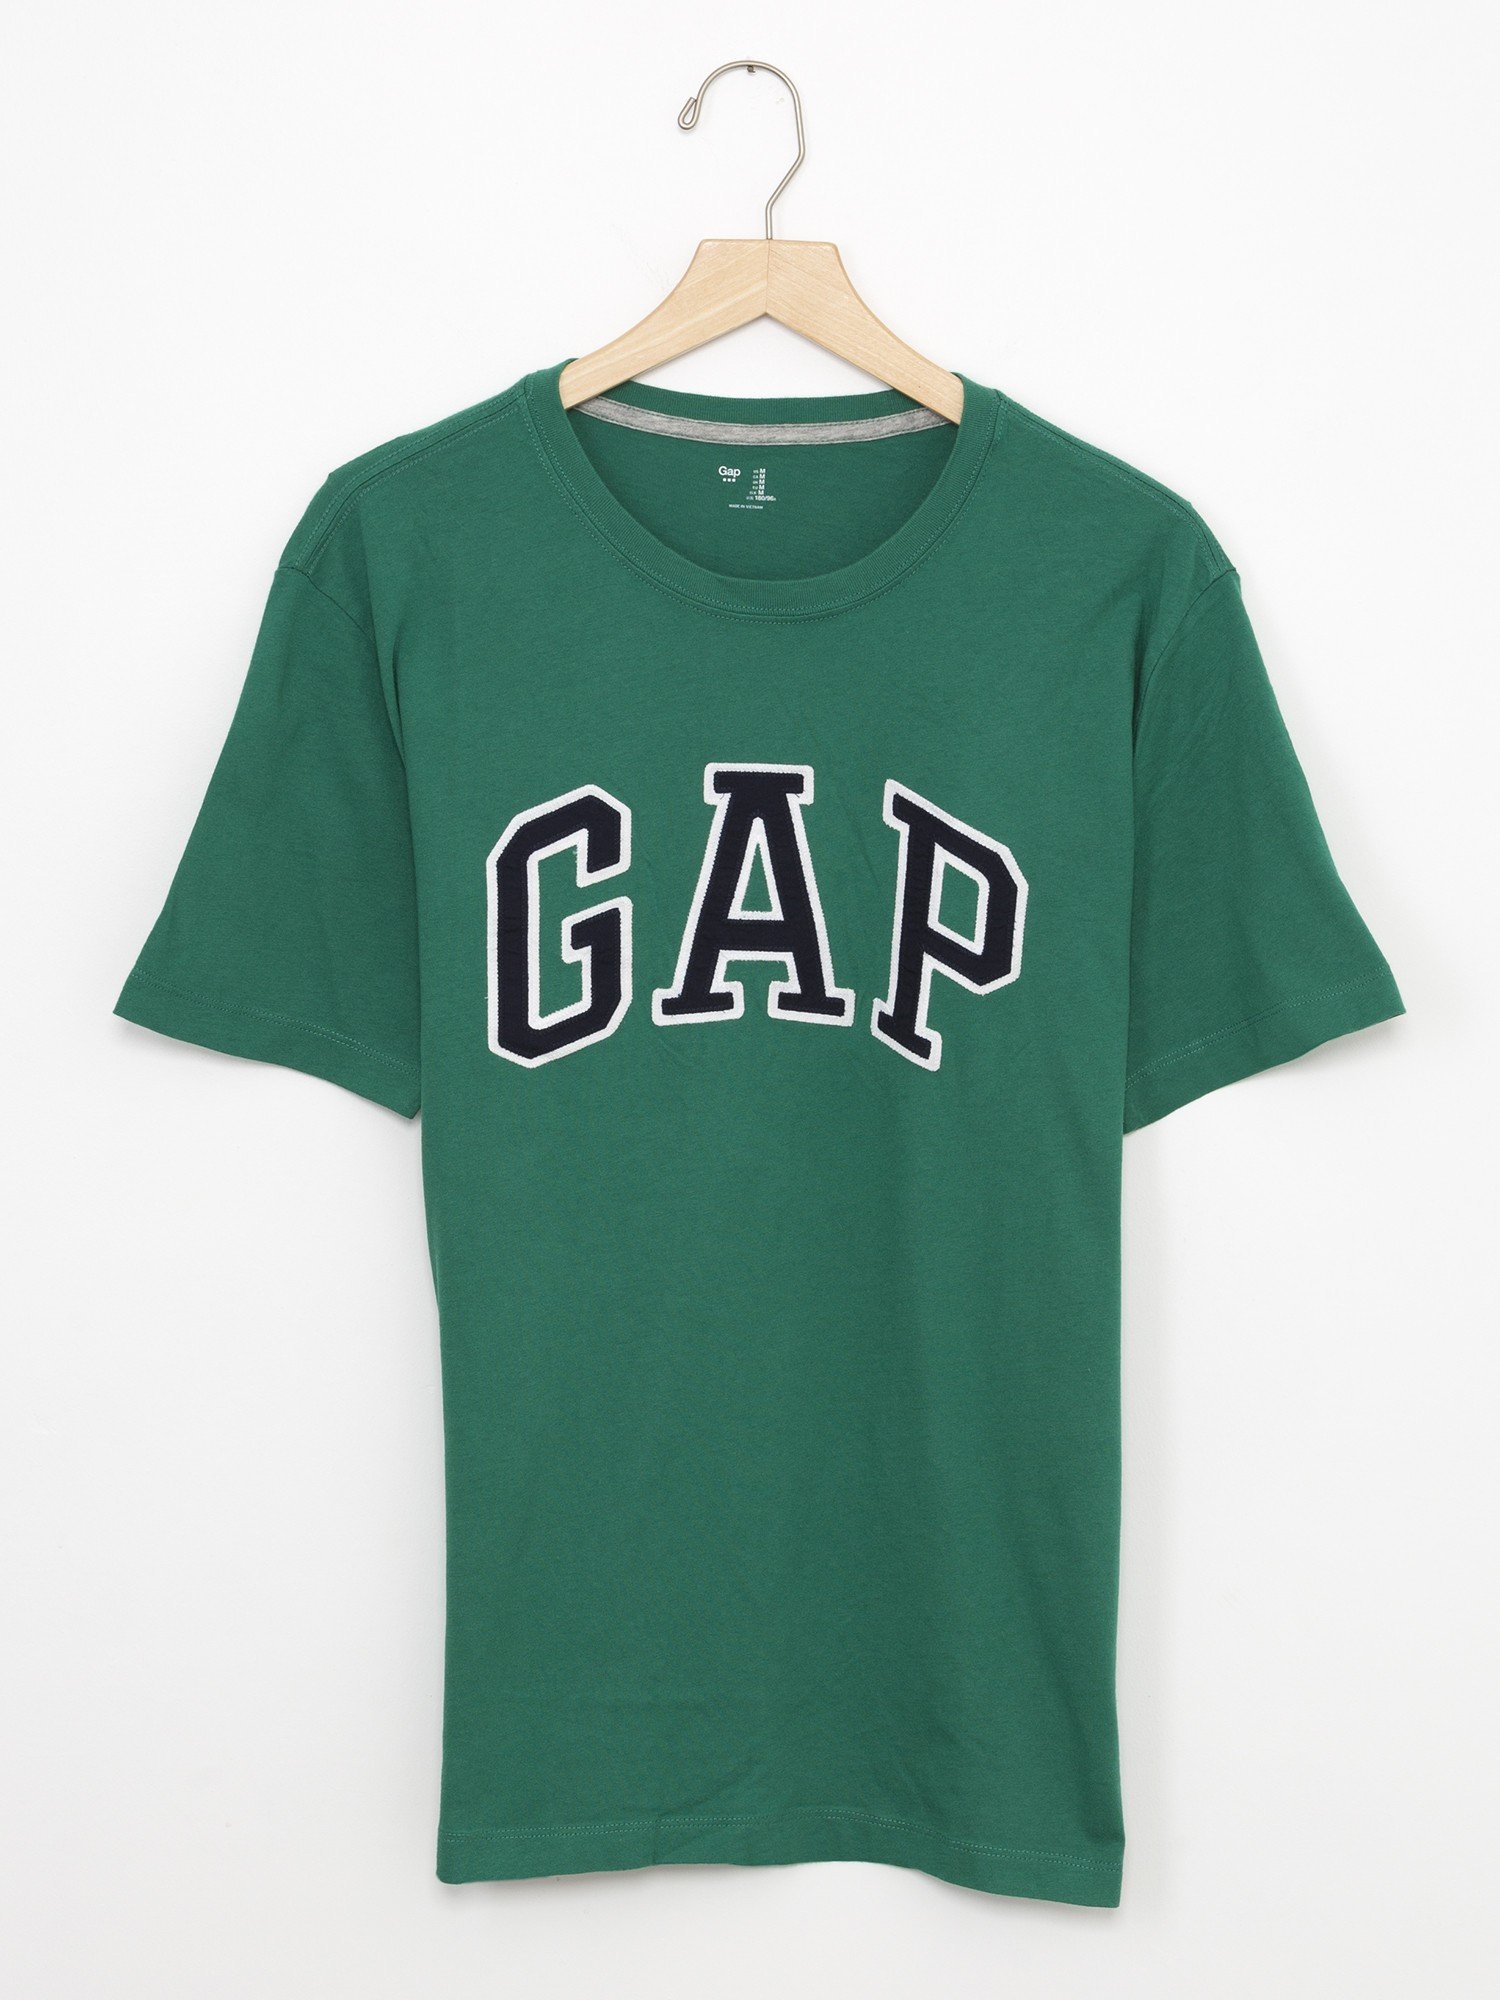 Gap Logolu t-shirt product image